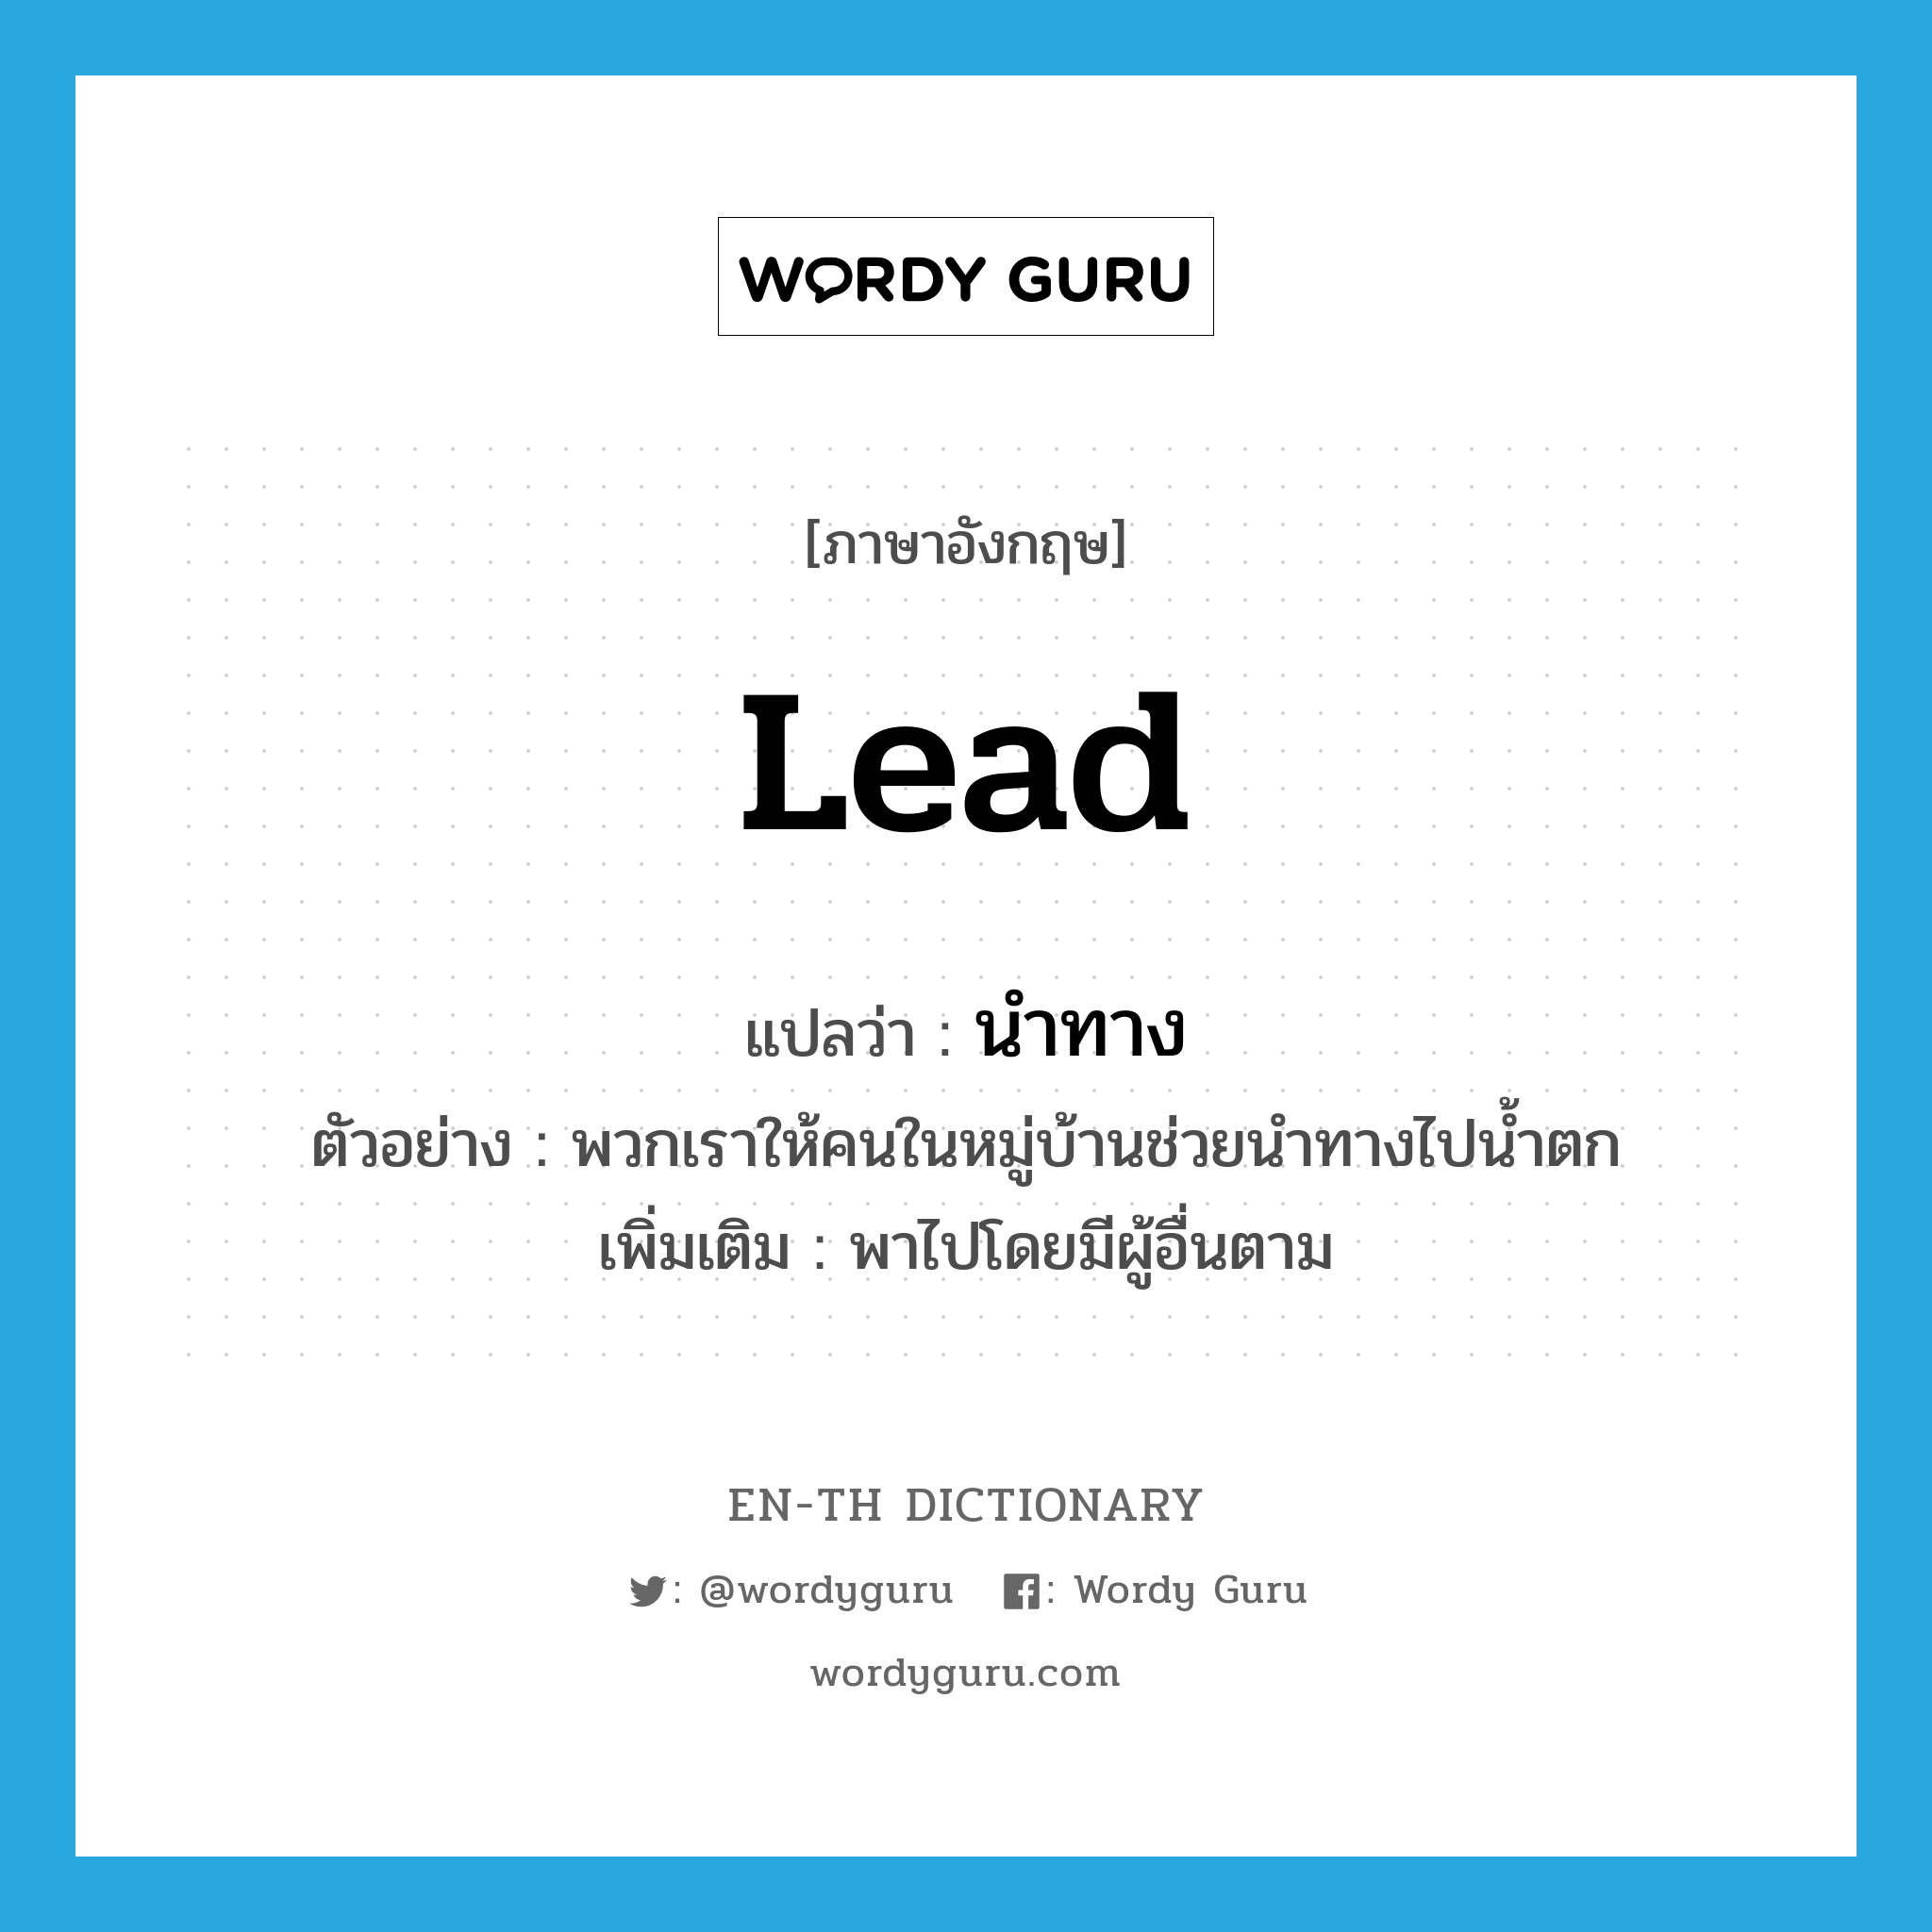 lead แปลว่า?, คำศัพท์ภาษาอังกฤษ lead แปลว่า นำทาง ประเภท V ตัวอย่าง พวกเราให้คนในหมู่บ้านช่วยนำทางไปน้ำตก เพิ่มเติม พาไปโดยมีผู้อื่นตาม หมวด V